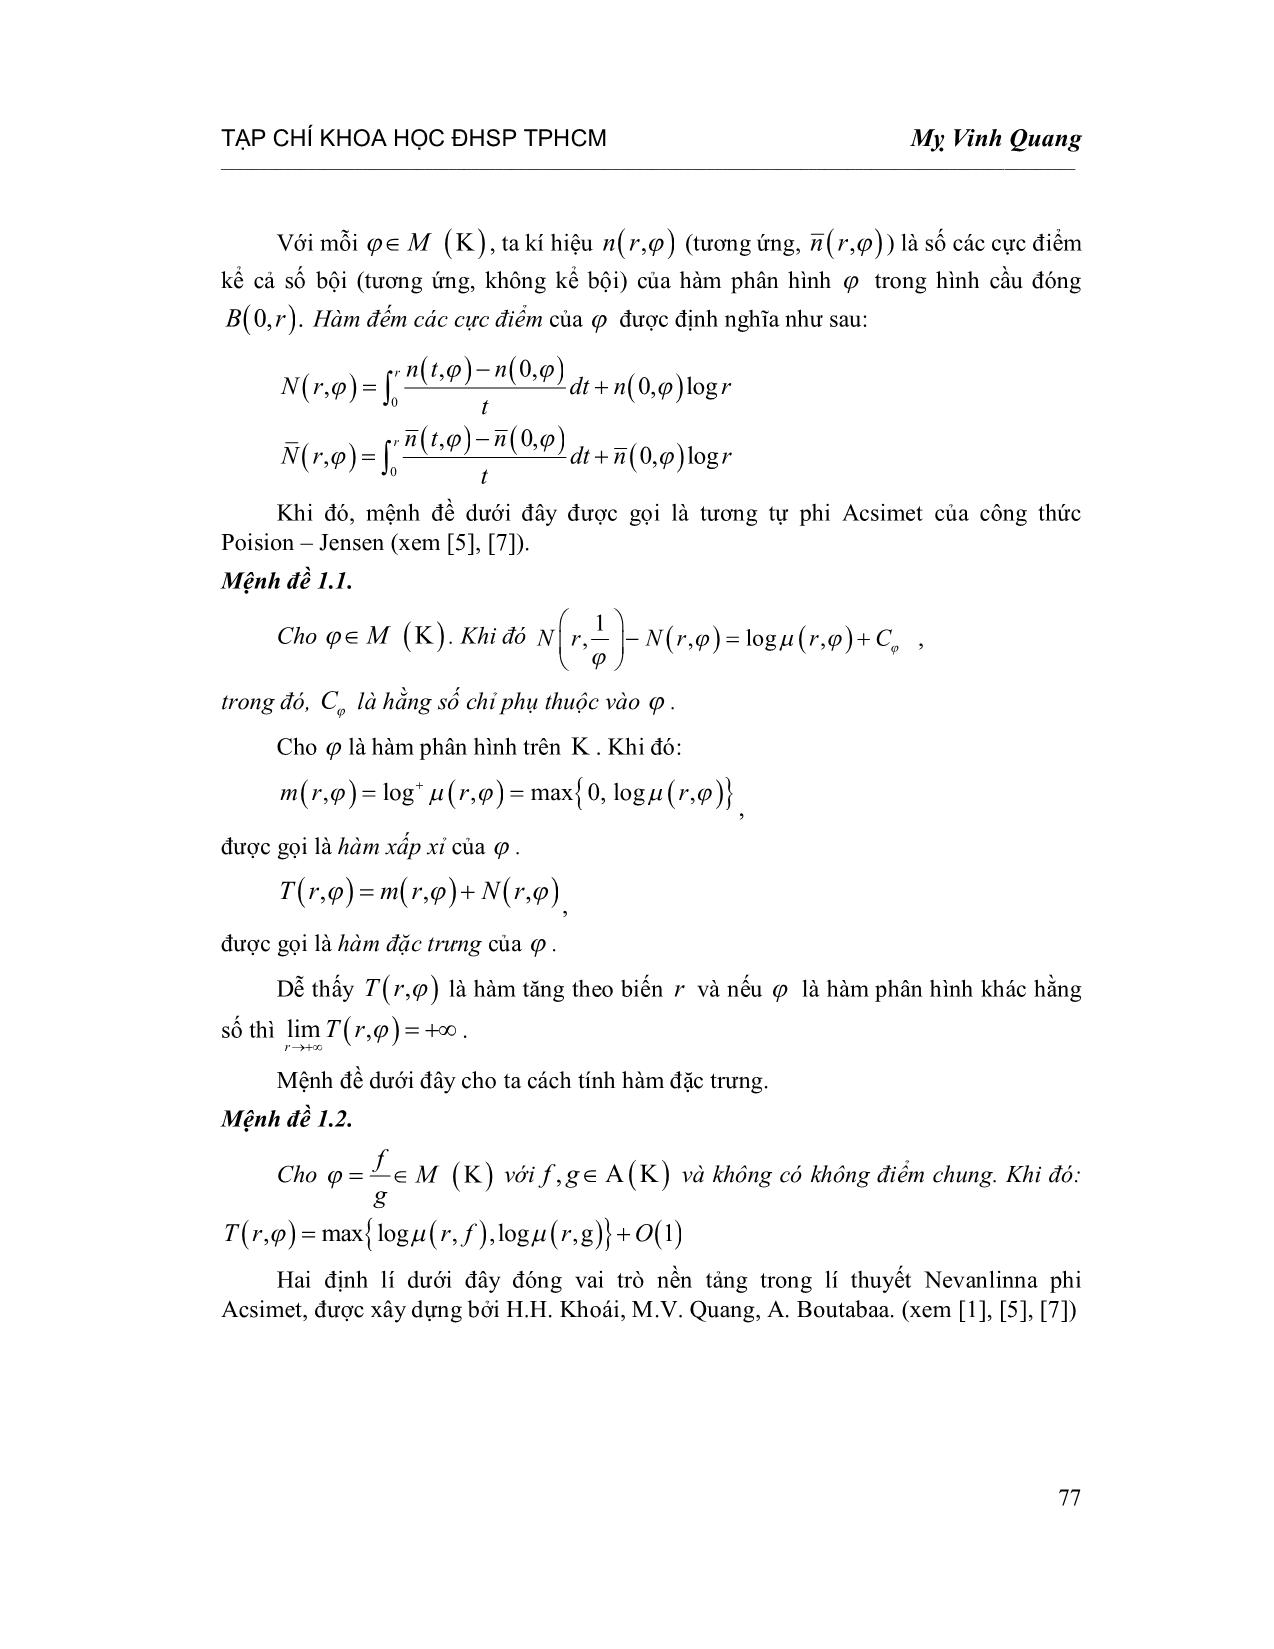 Số khuyết của hàm phân hình phi Acsimet trang 2